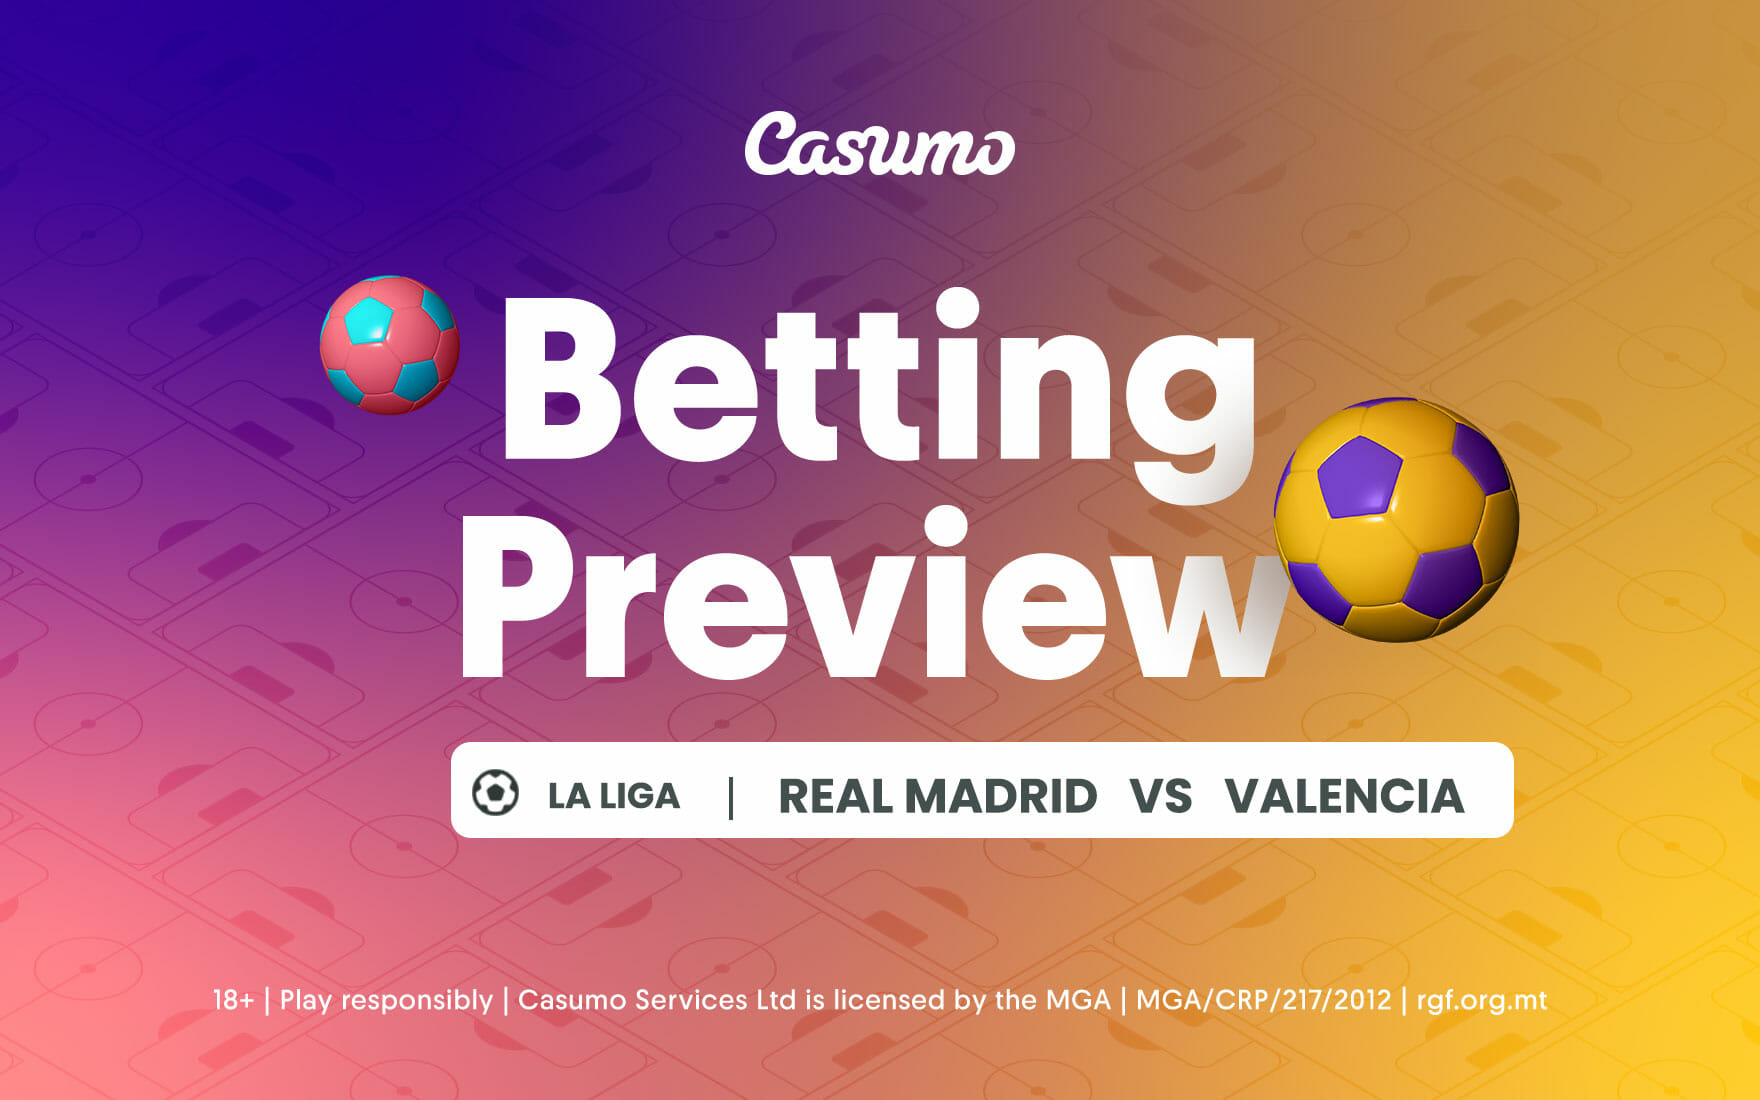 Real Madrid vs Valencia betting tips